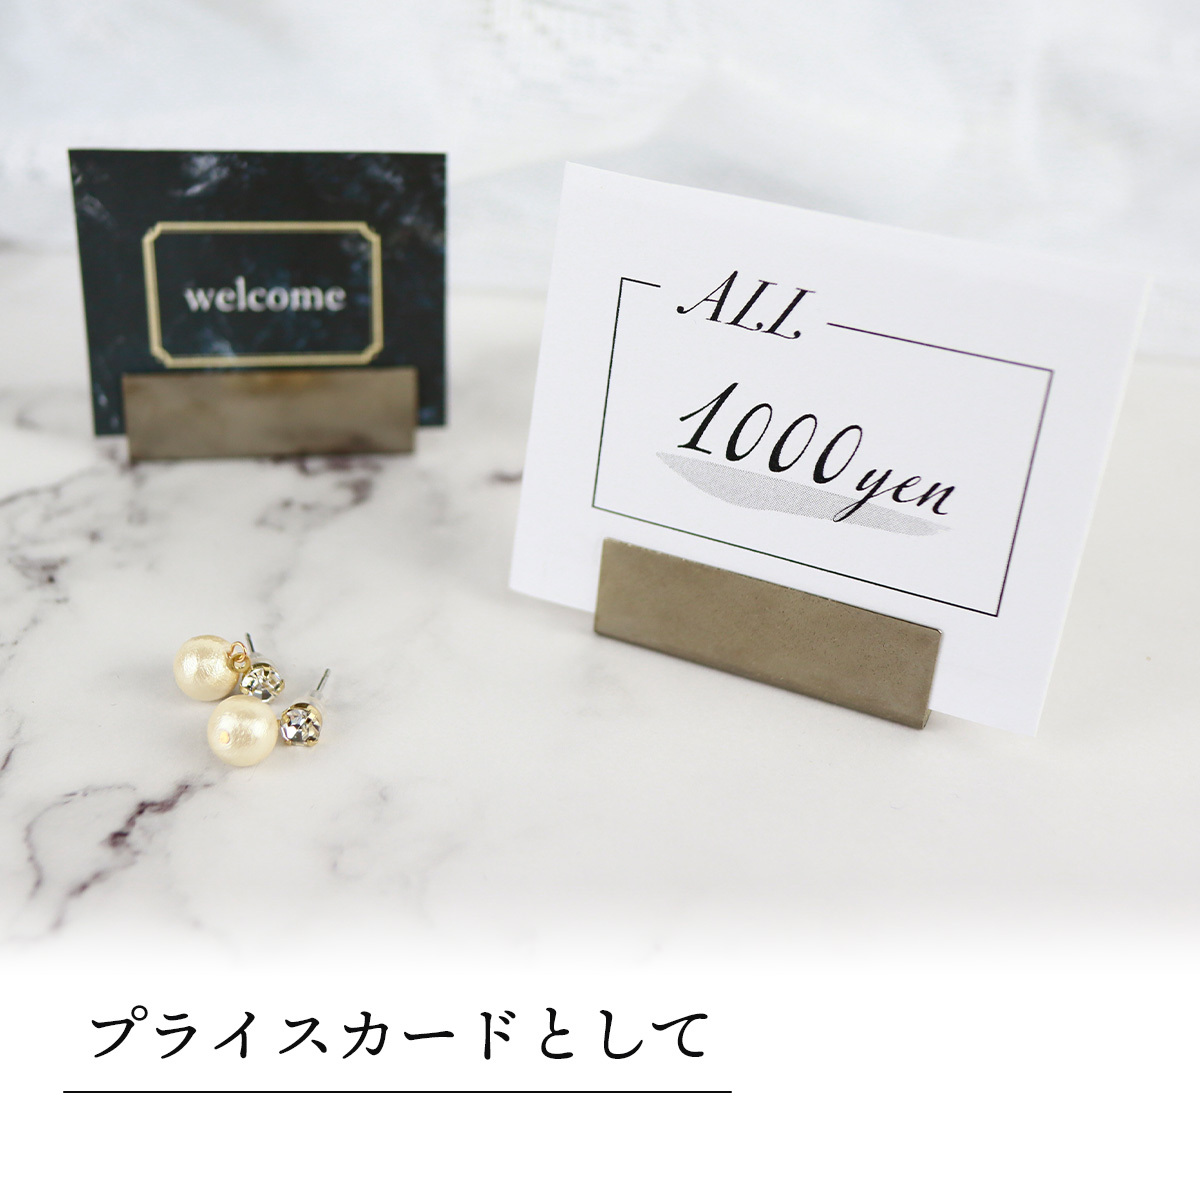 市場 ステンレス シルバー プライスカード カードホルダー 日本製 個入り ワイドサイズ アンティーク調 カードスタンド